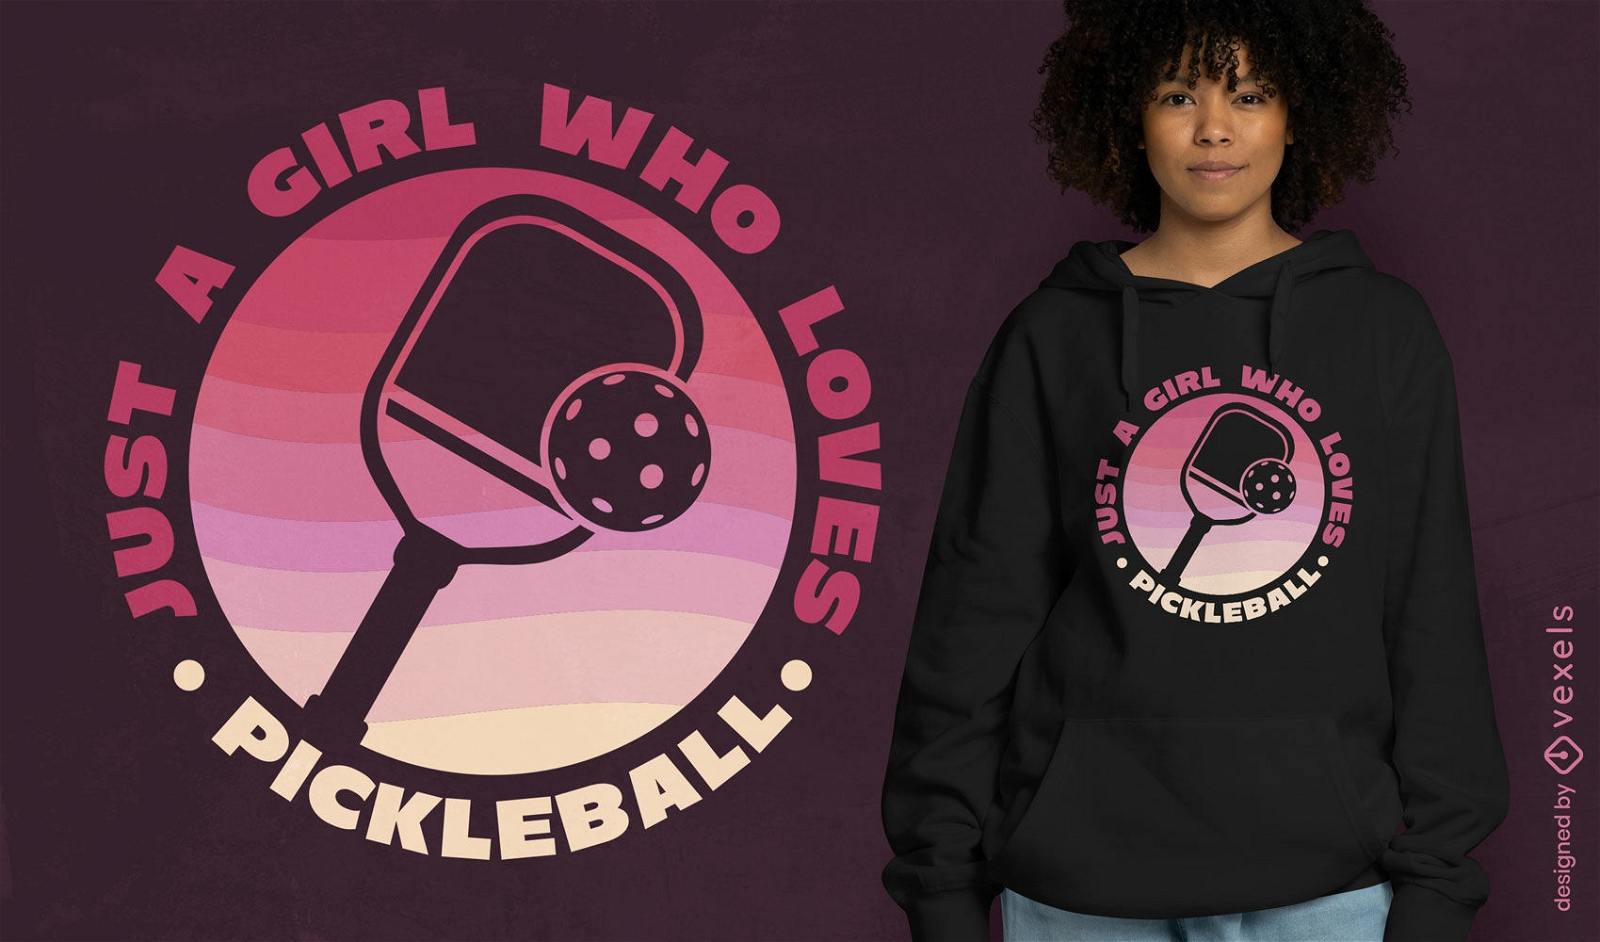 Girl who loves pickleball t-shirt design